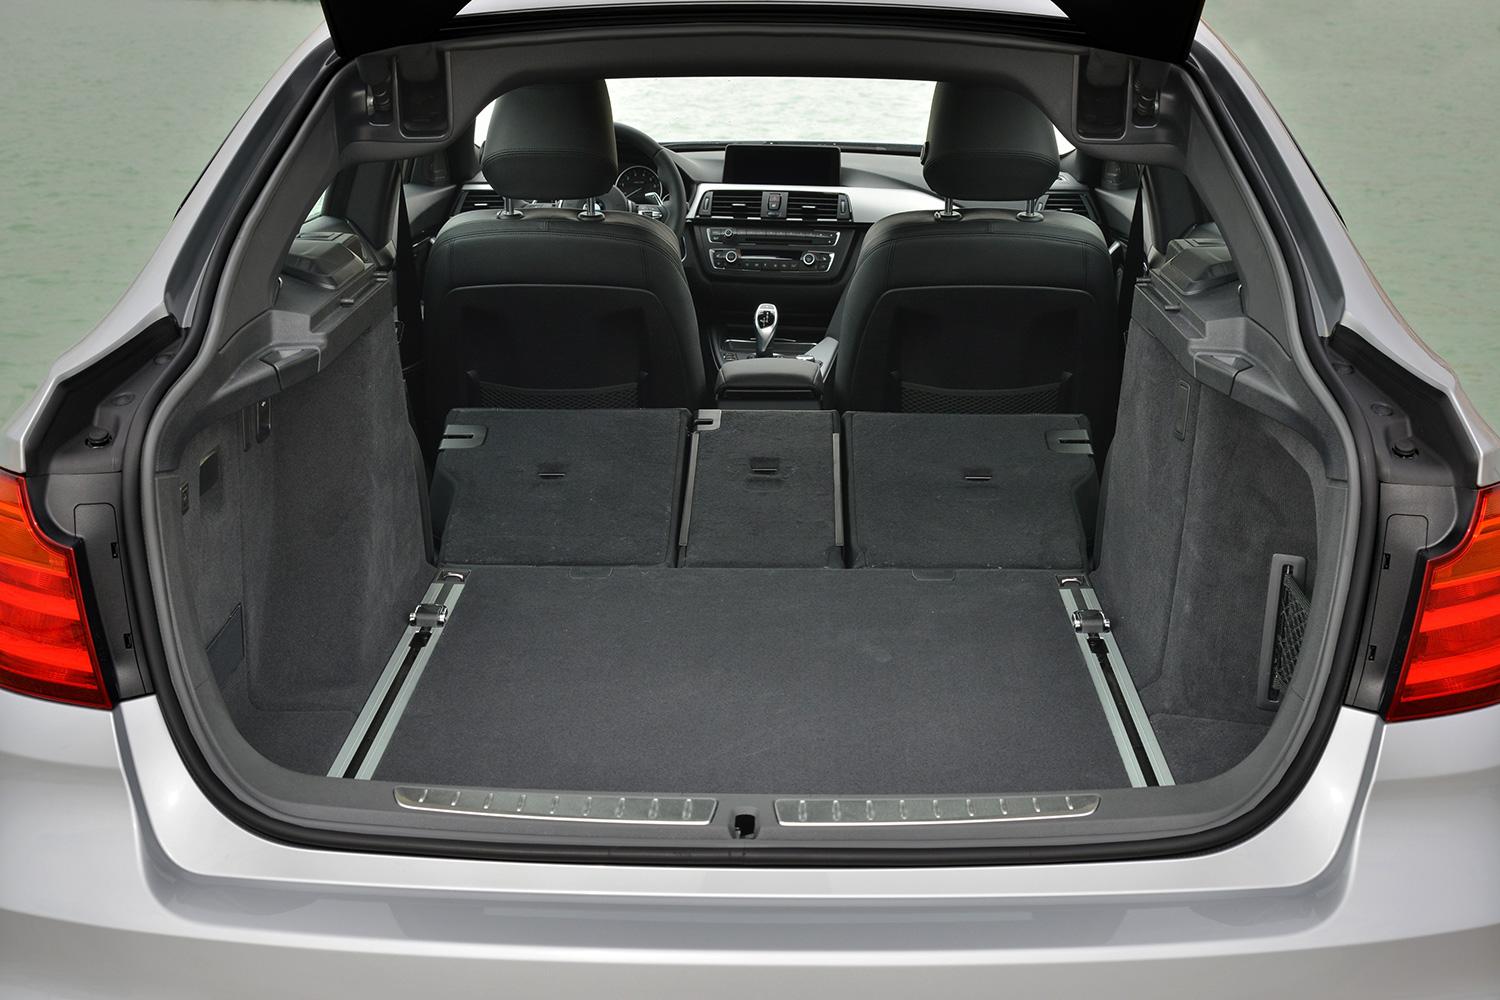 Rymligt och lättlastat bagageutrymme – men snålt av BMW att lastytan inte blir helt plan när sätena fälls.